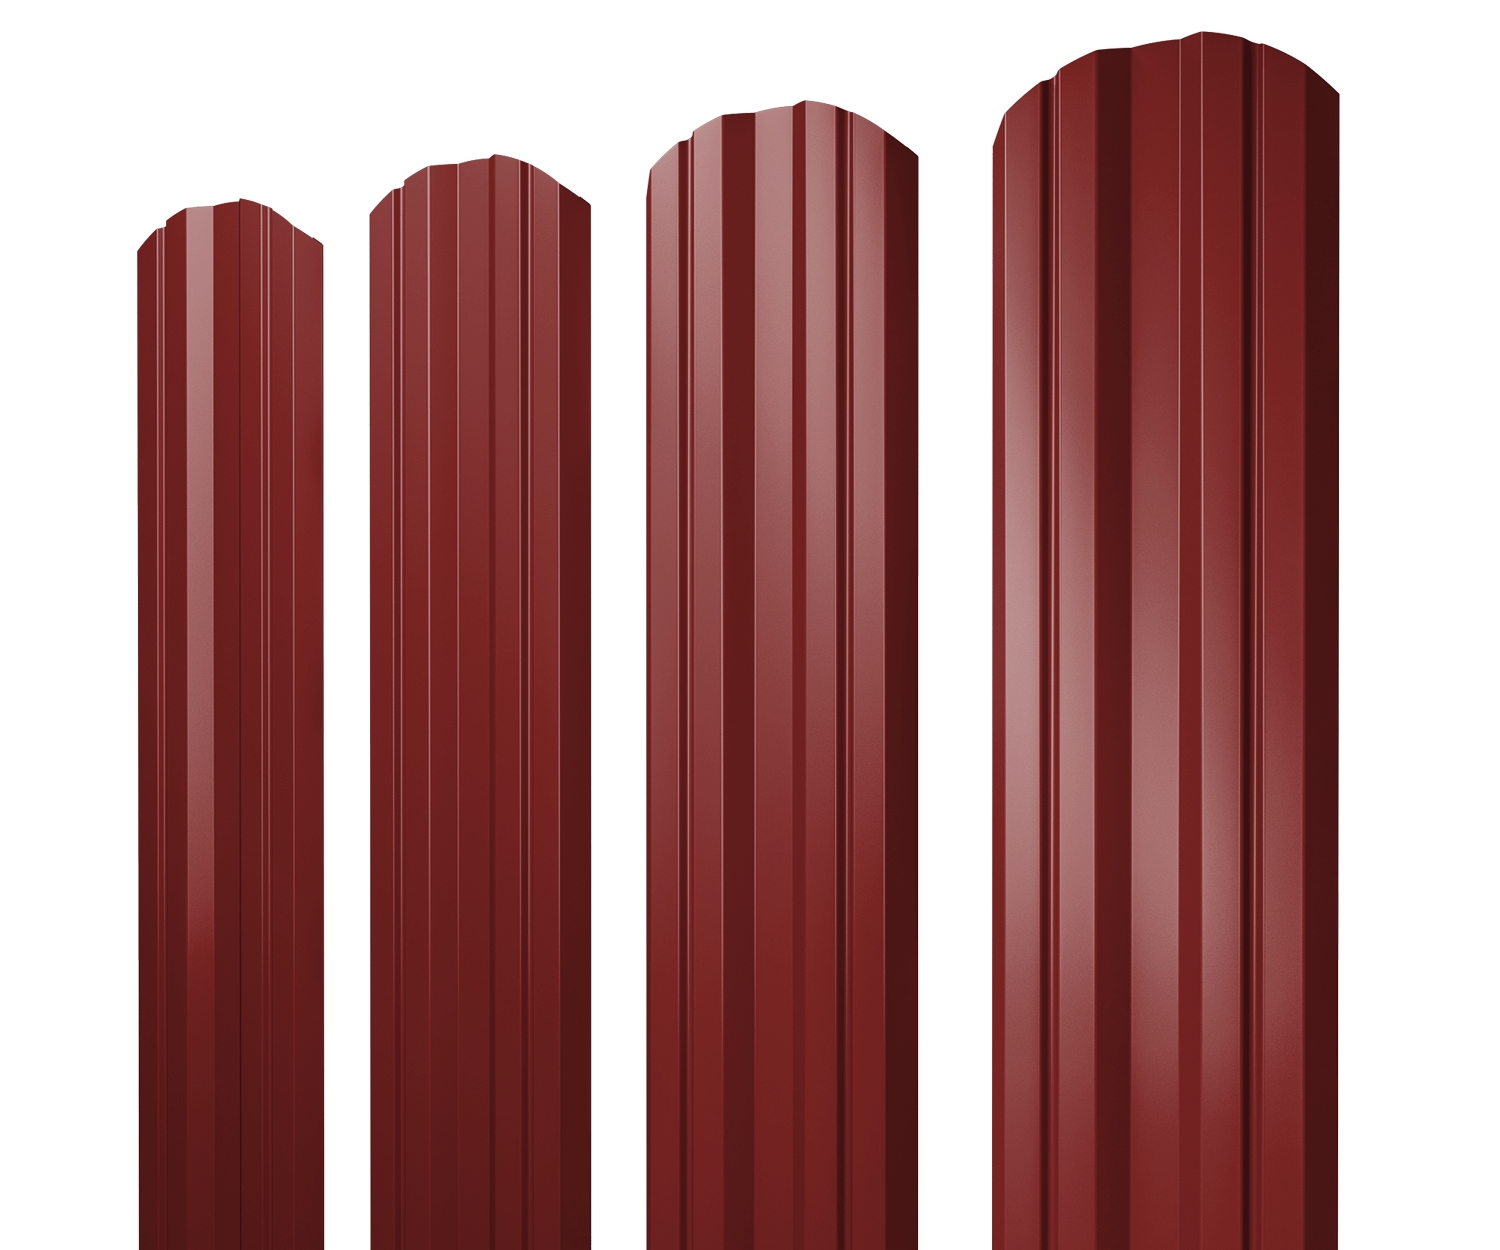 Штакетник Twin фигурный 0,45 PE RAL 3011 коричнево-красный